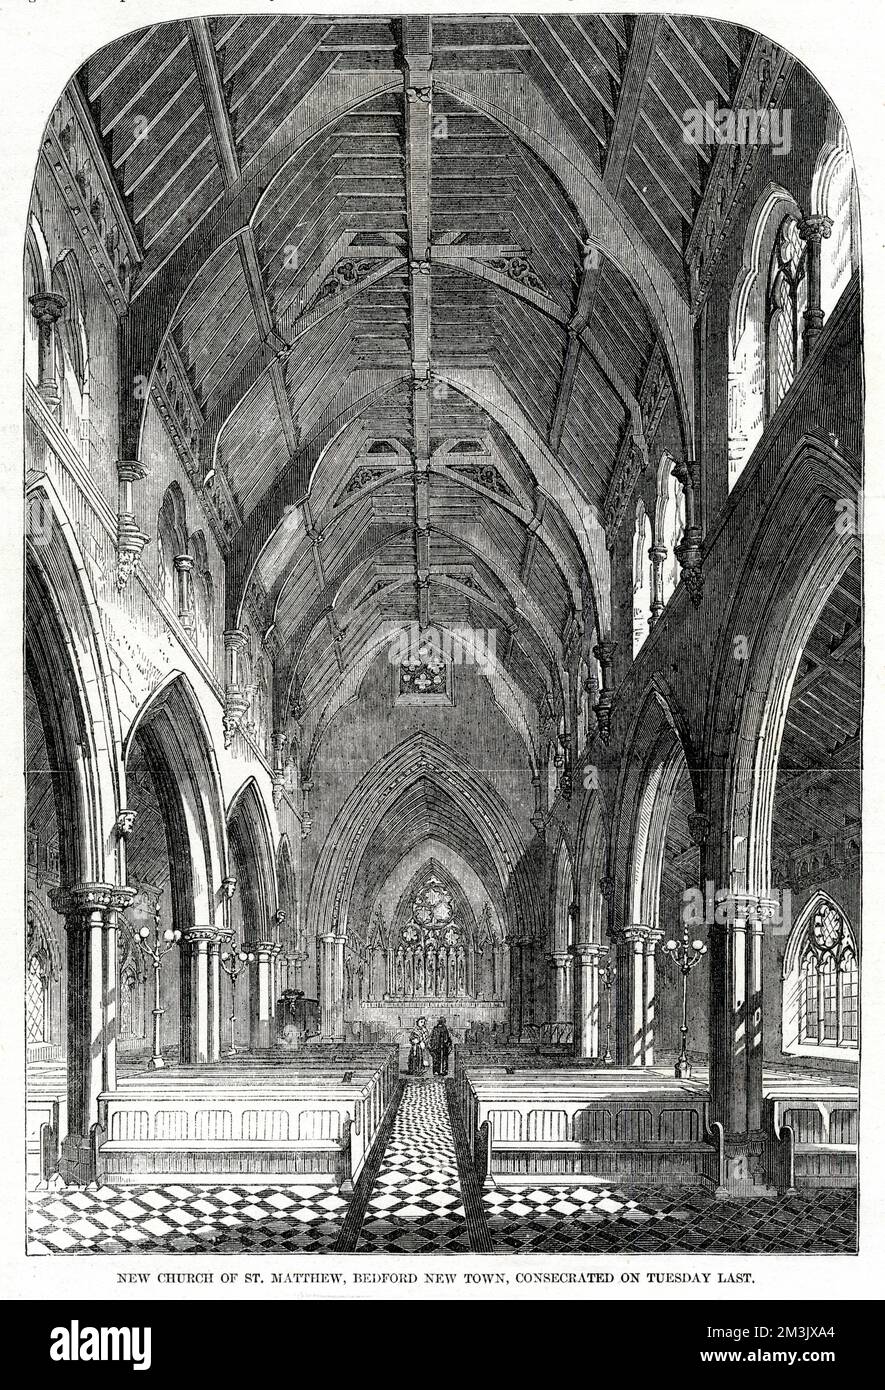 Das Schiff der Kirche St. Matthew, Bedford New Town, in der Gemeinde St. Pancras, London. Die Kirche wurde im Dezember des Jahres vom Bischof von London geweiht. Datum: 1856 Stockfoto